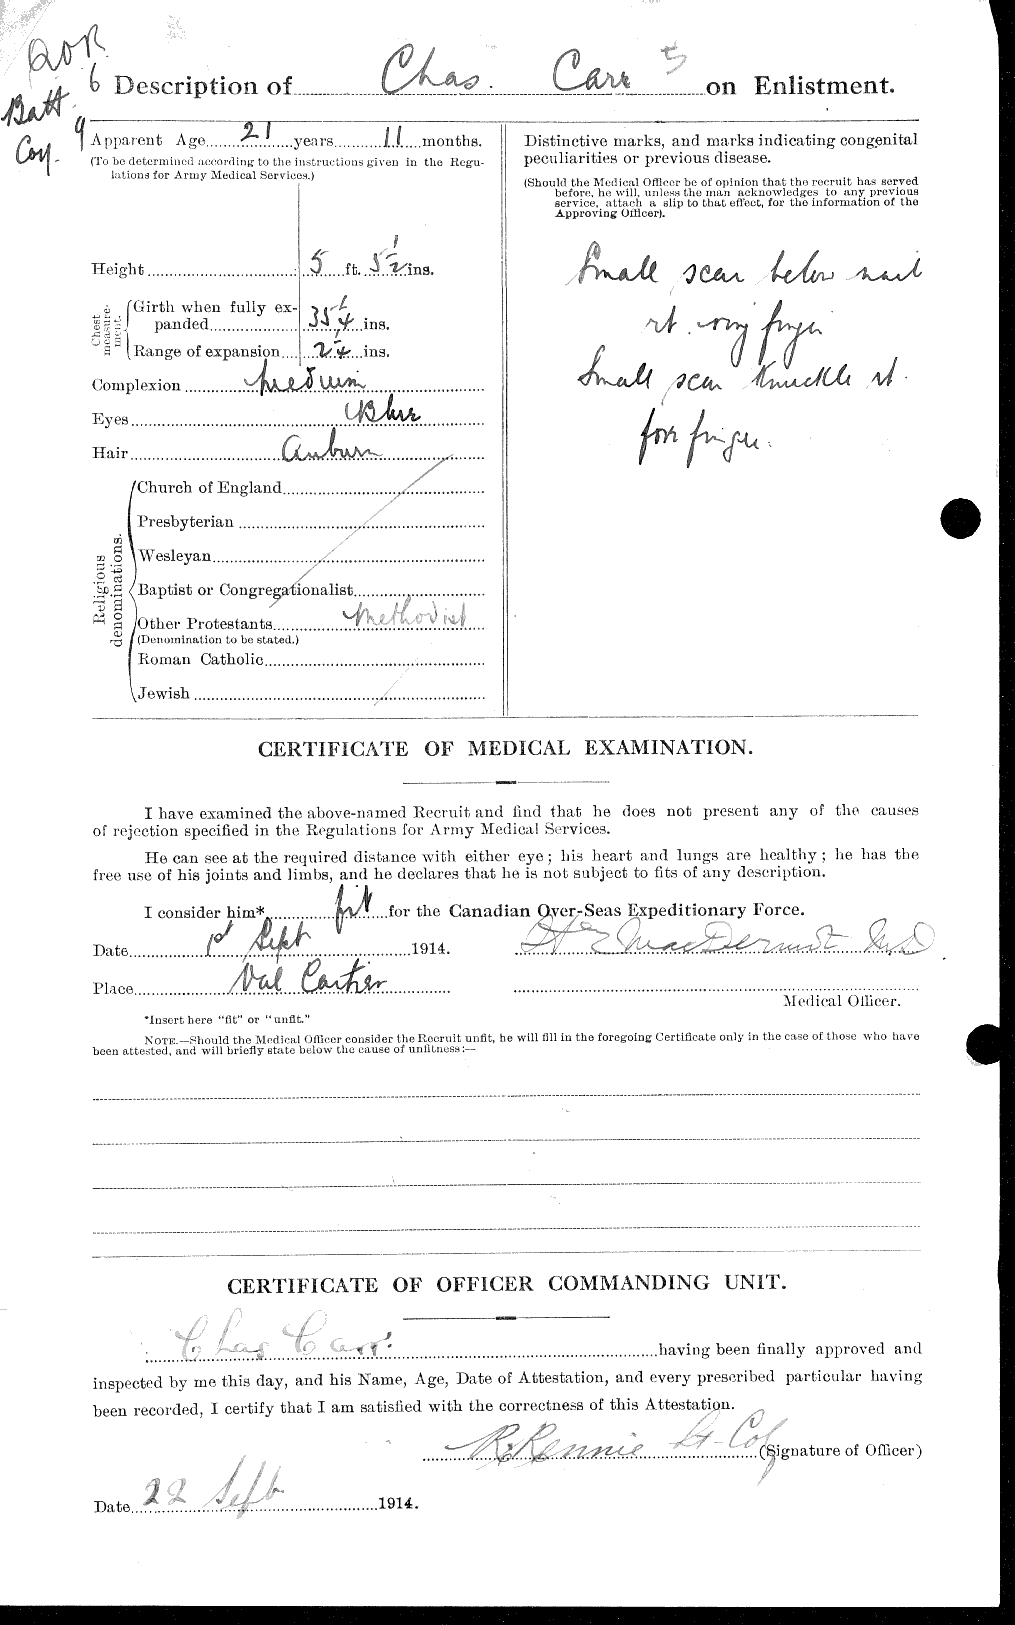 Dossiers du Personnel de la Première Guerre mondiale - CEC 005283b